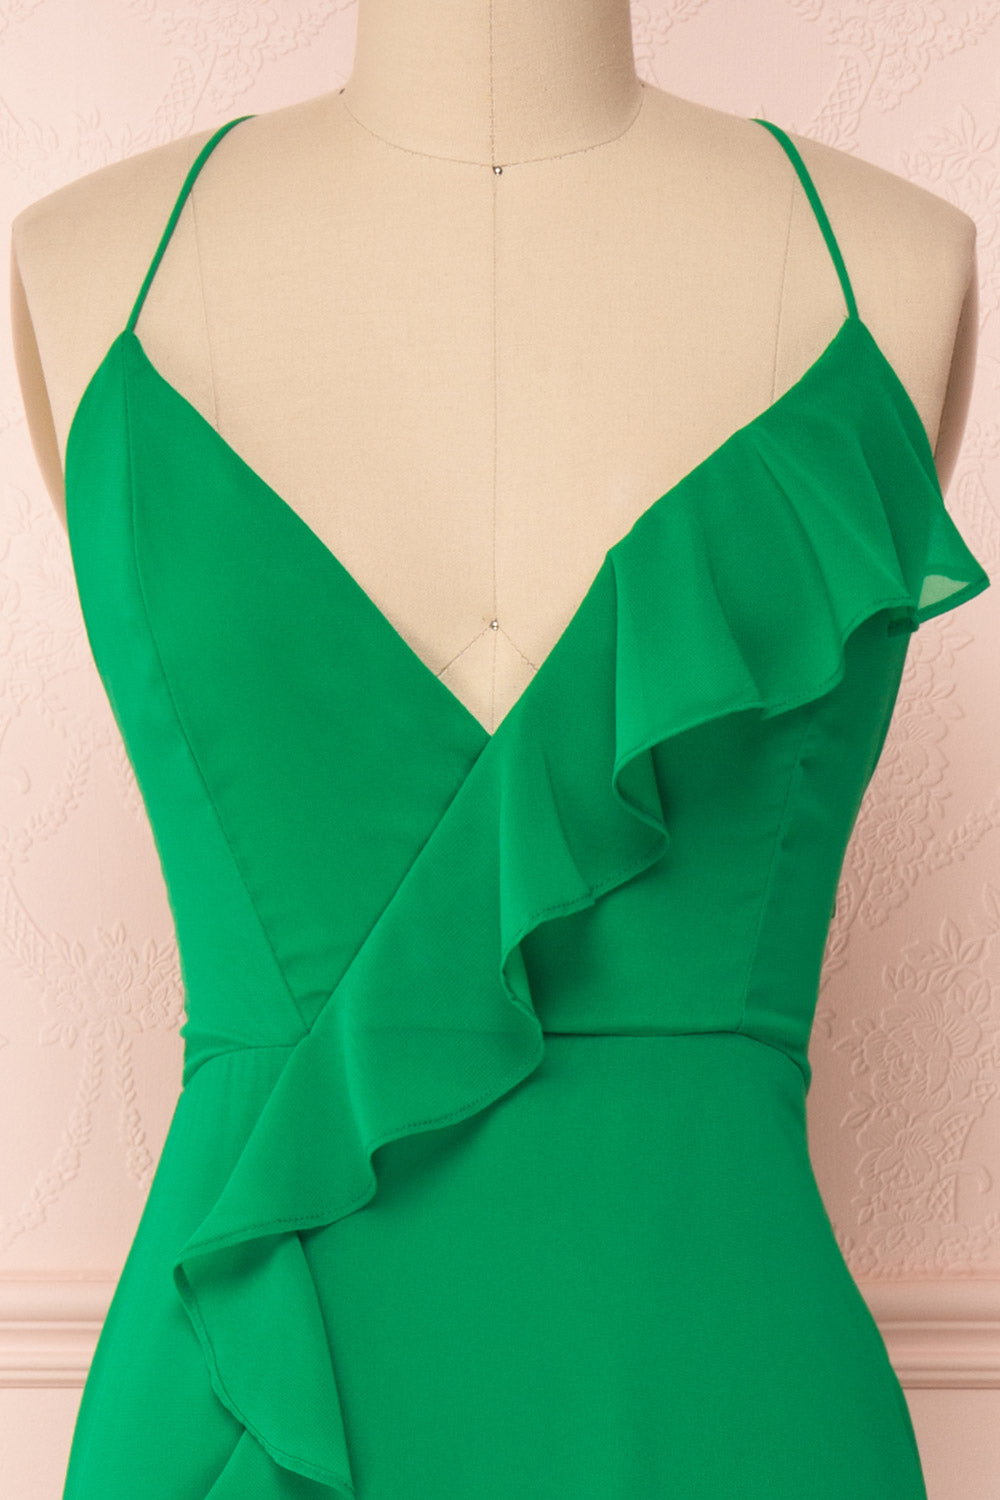 Kekoa Green Chiffon Gown with Ruffles | Boutique 1861 2